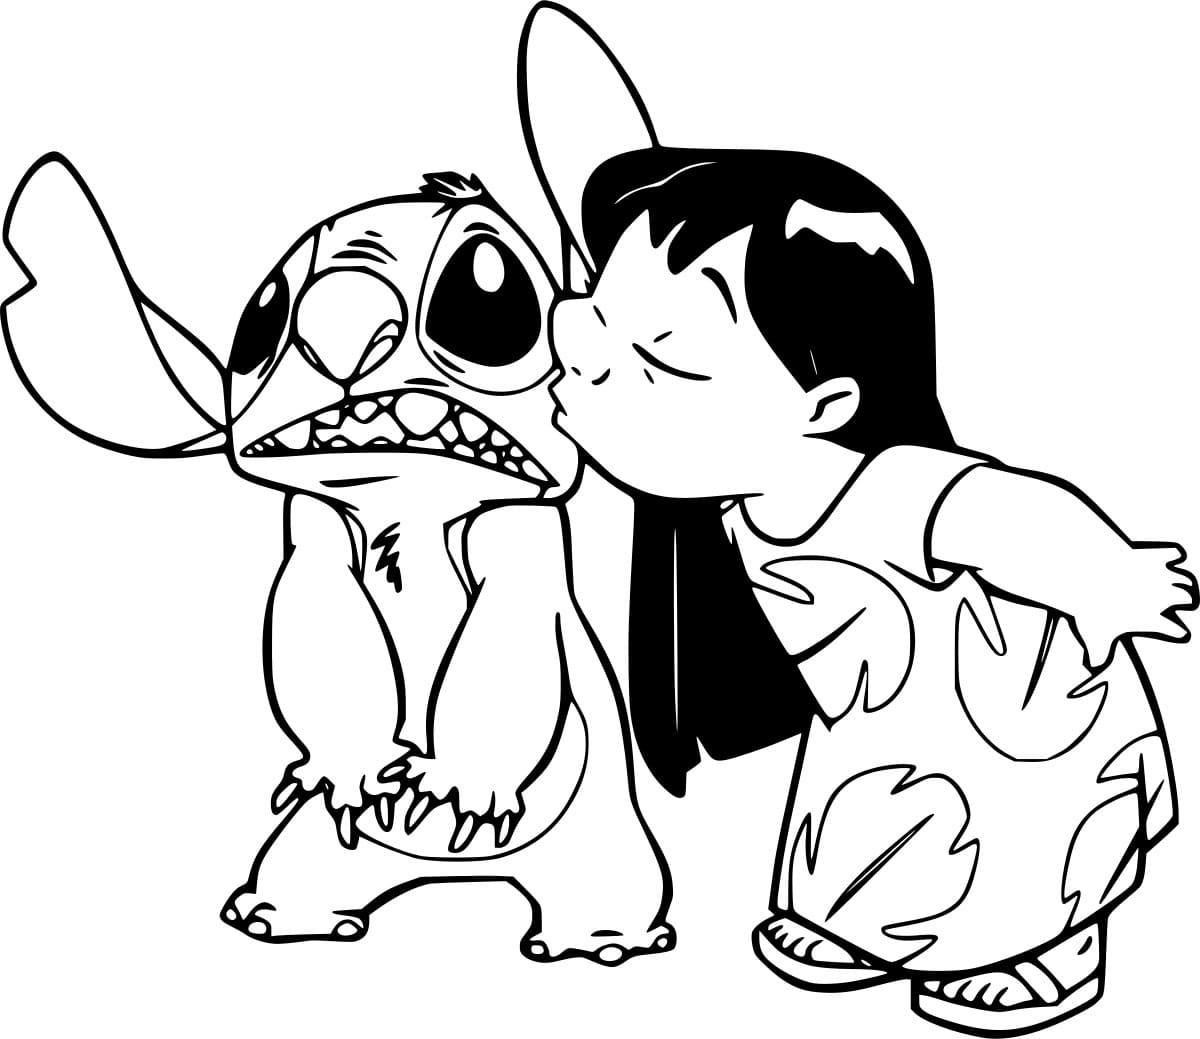 Lilo küsst Stitch